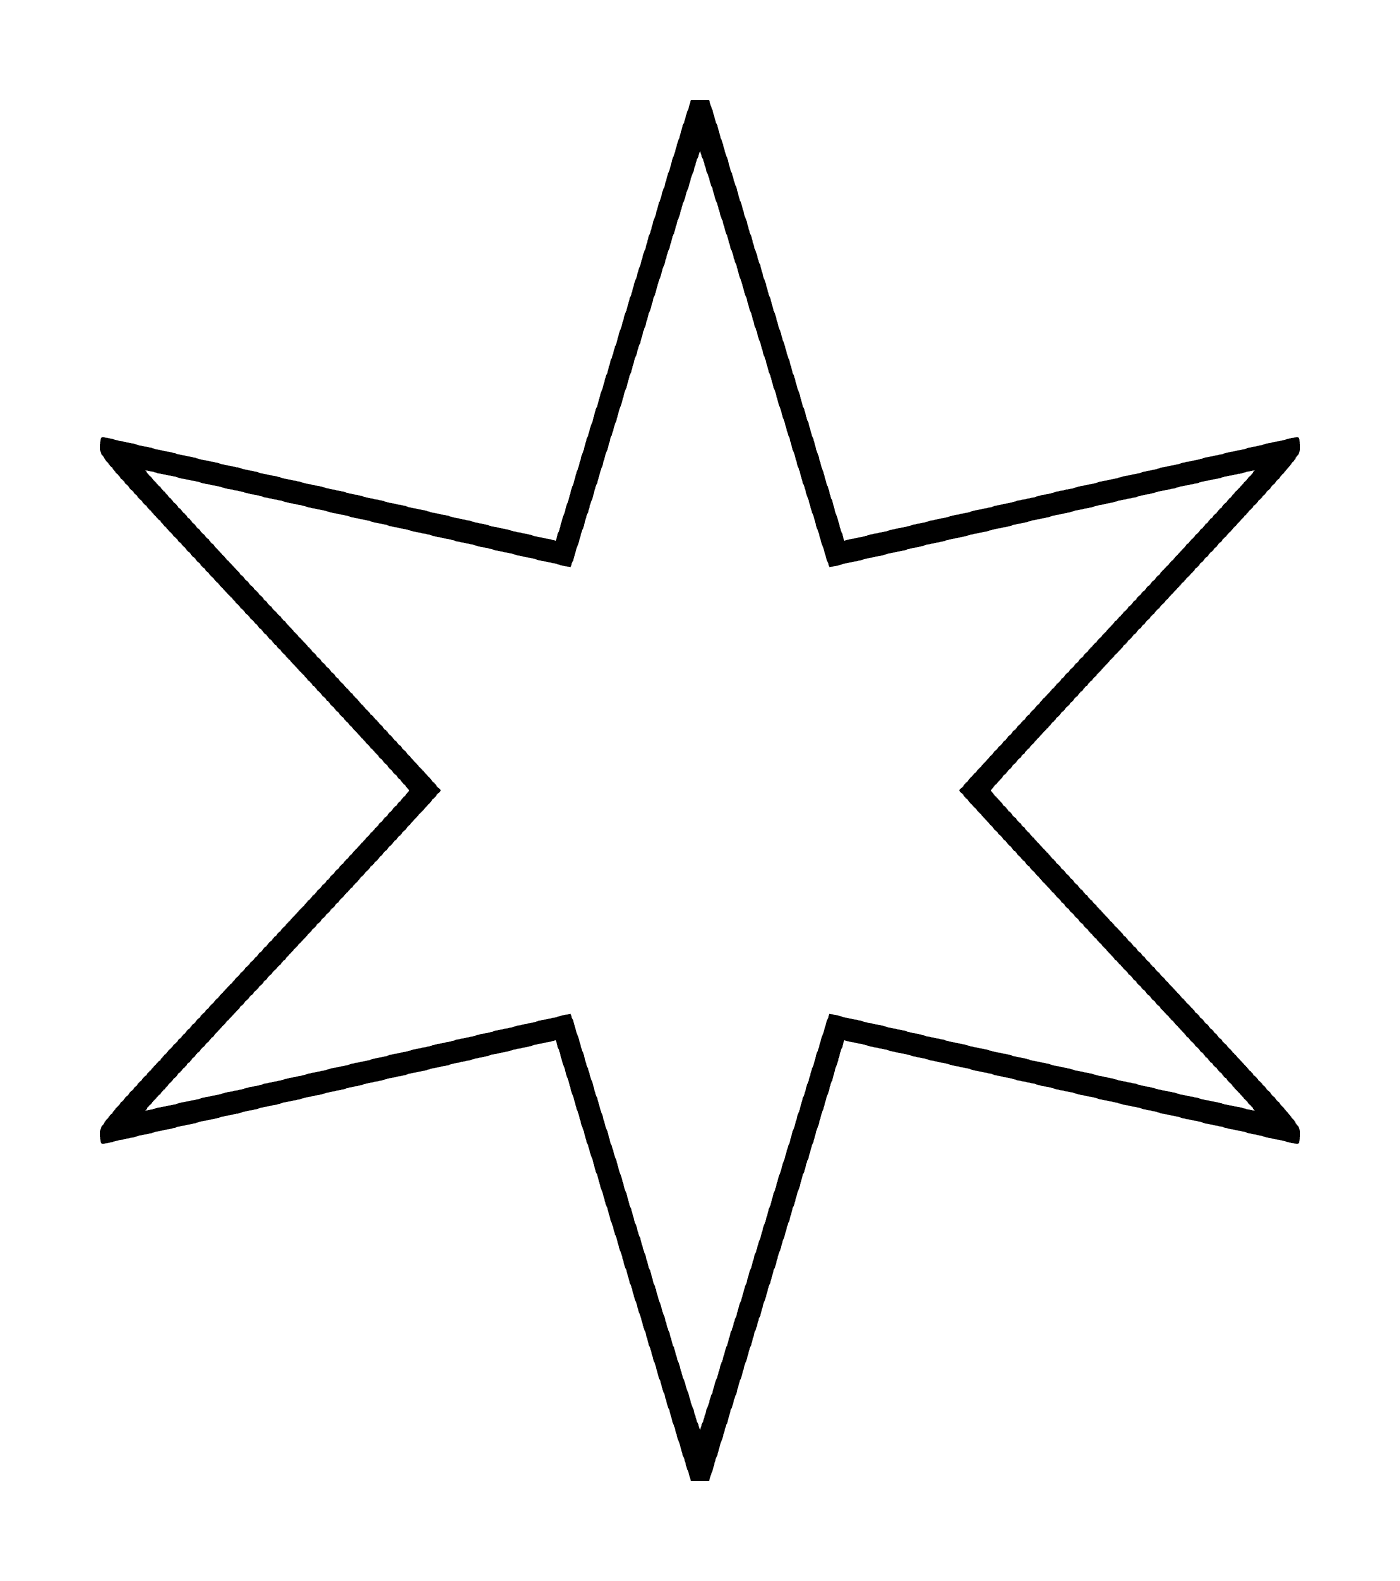  Una stella a sei punte simile a un fiore 